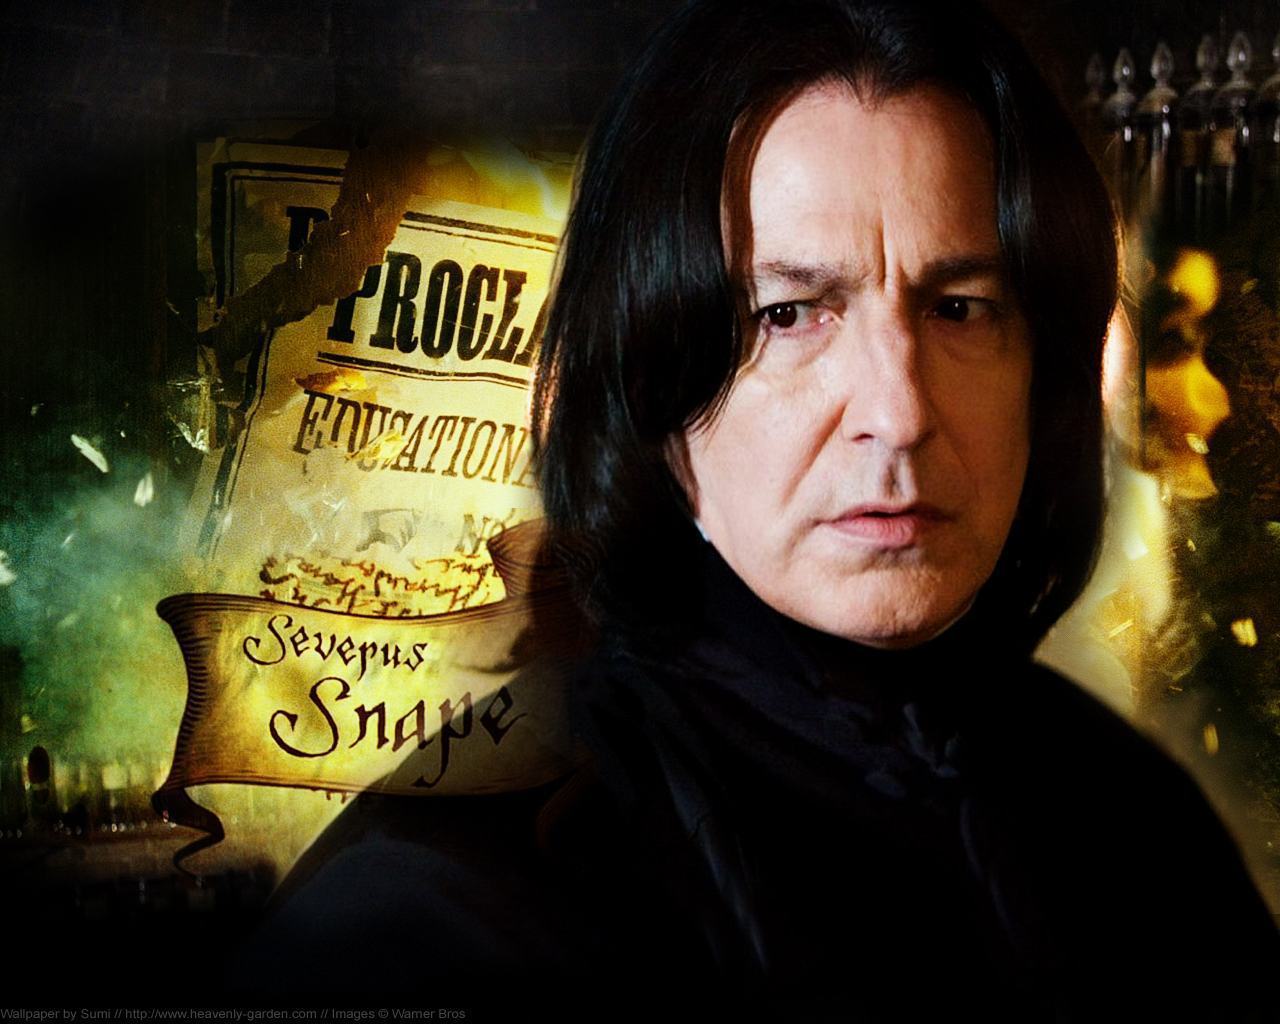 Alan Rickman, o Snape da série Harry Potter, morre aos 69 anos